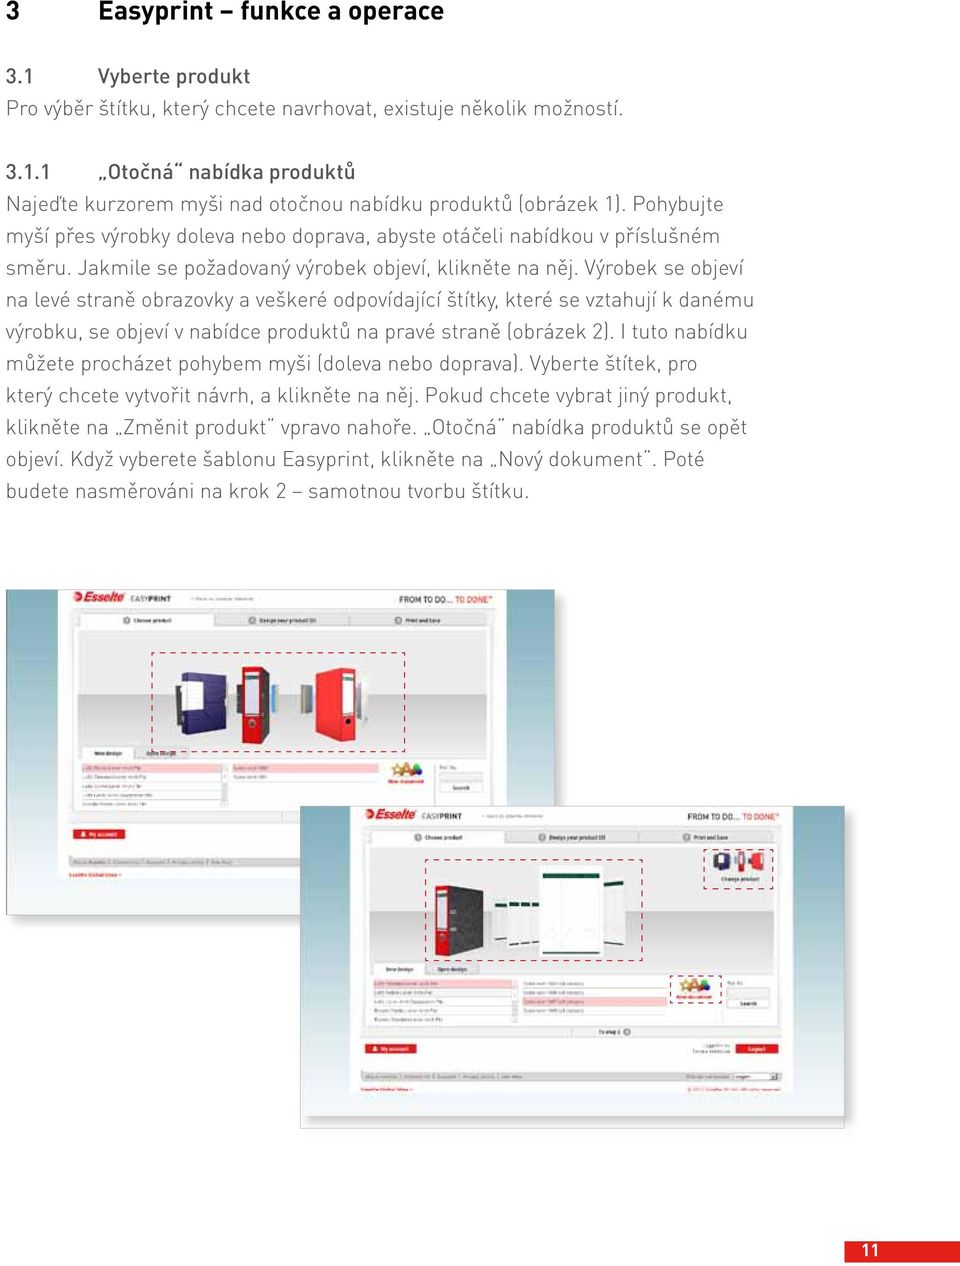 Výrobek se objeví na levé straně obrazovky a veškeré odpovídající štítky, které se vztahují k danému výrobku, se objeví v nabídce produktů na pravé straně (obrázek 2).